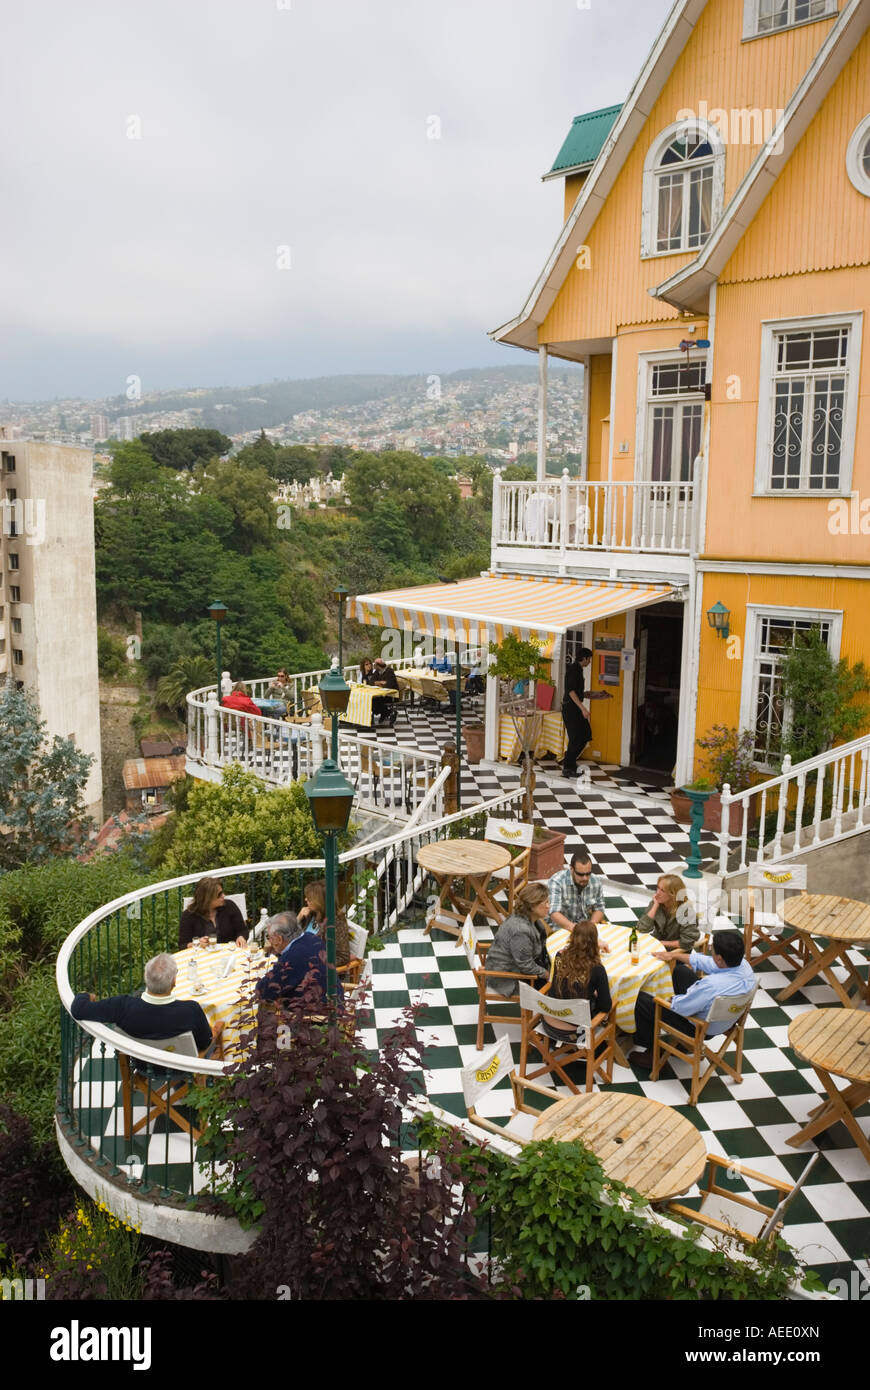 Gäste in einem Restaurant am Cerro Concepcion über Aussehen der Stadt Valparaiso, Chile. Stockfoto